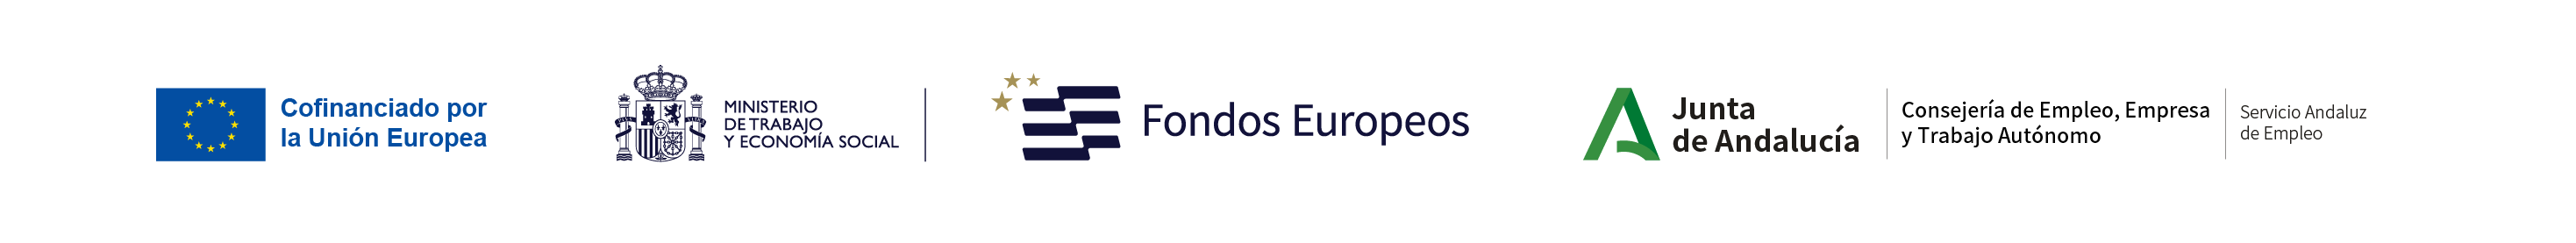 Logos cofinanciación unión europea